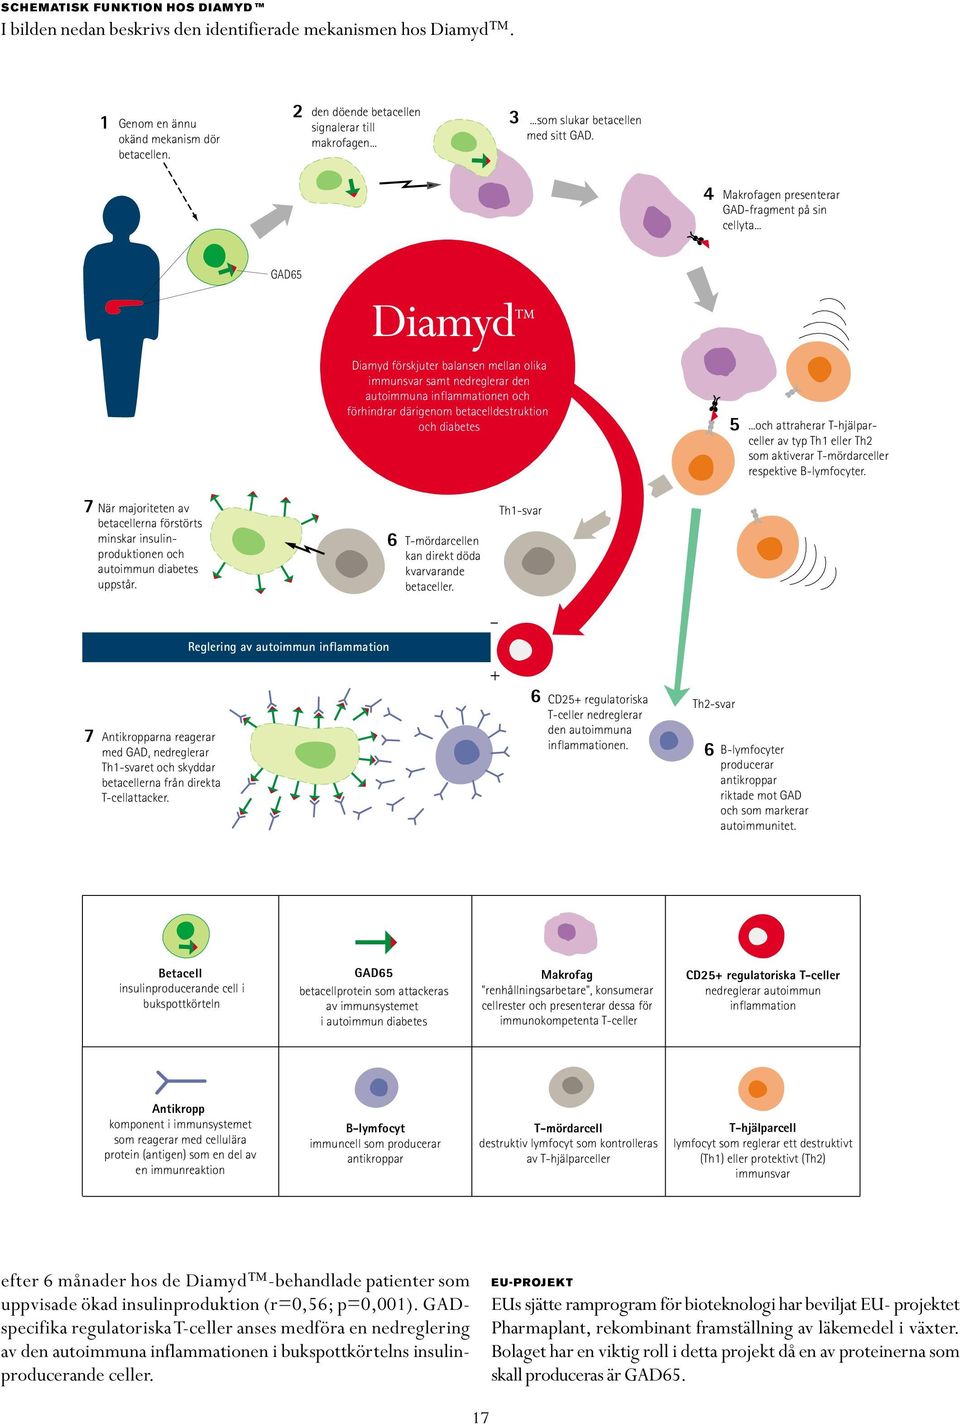 .. GAD65 Diamyd förskjuter balansen mellan olika immunsvar samt nedreglerar den autoimmuna inflammationen och förhindrar därigenom betacelldestruktion och diabetes 5.